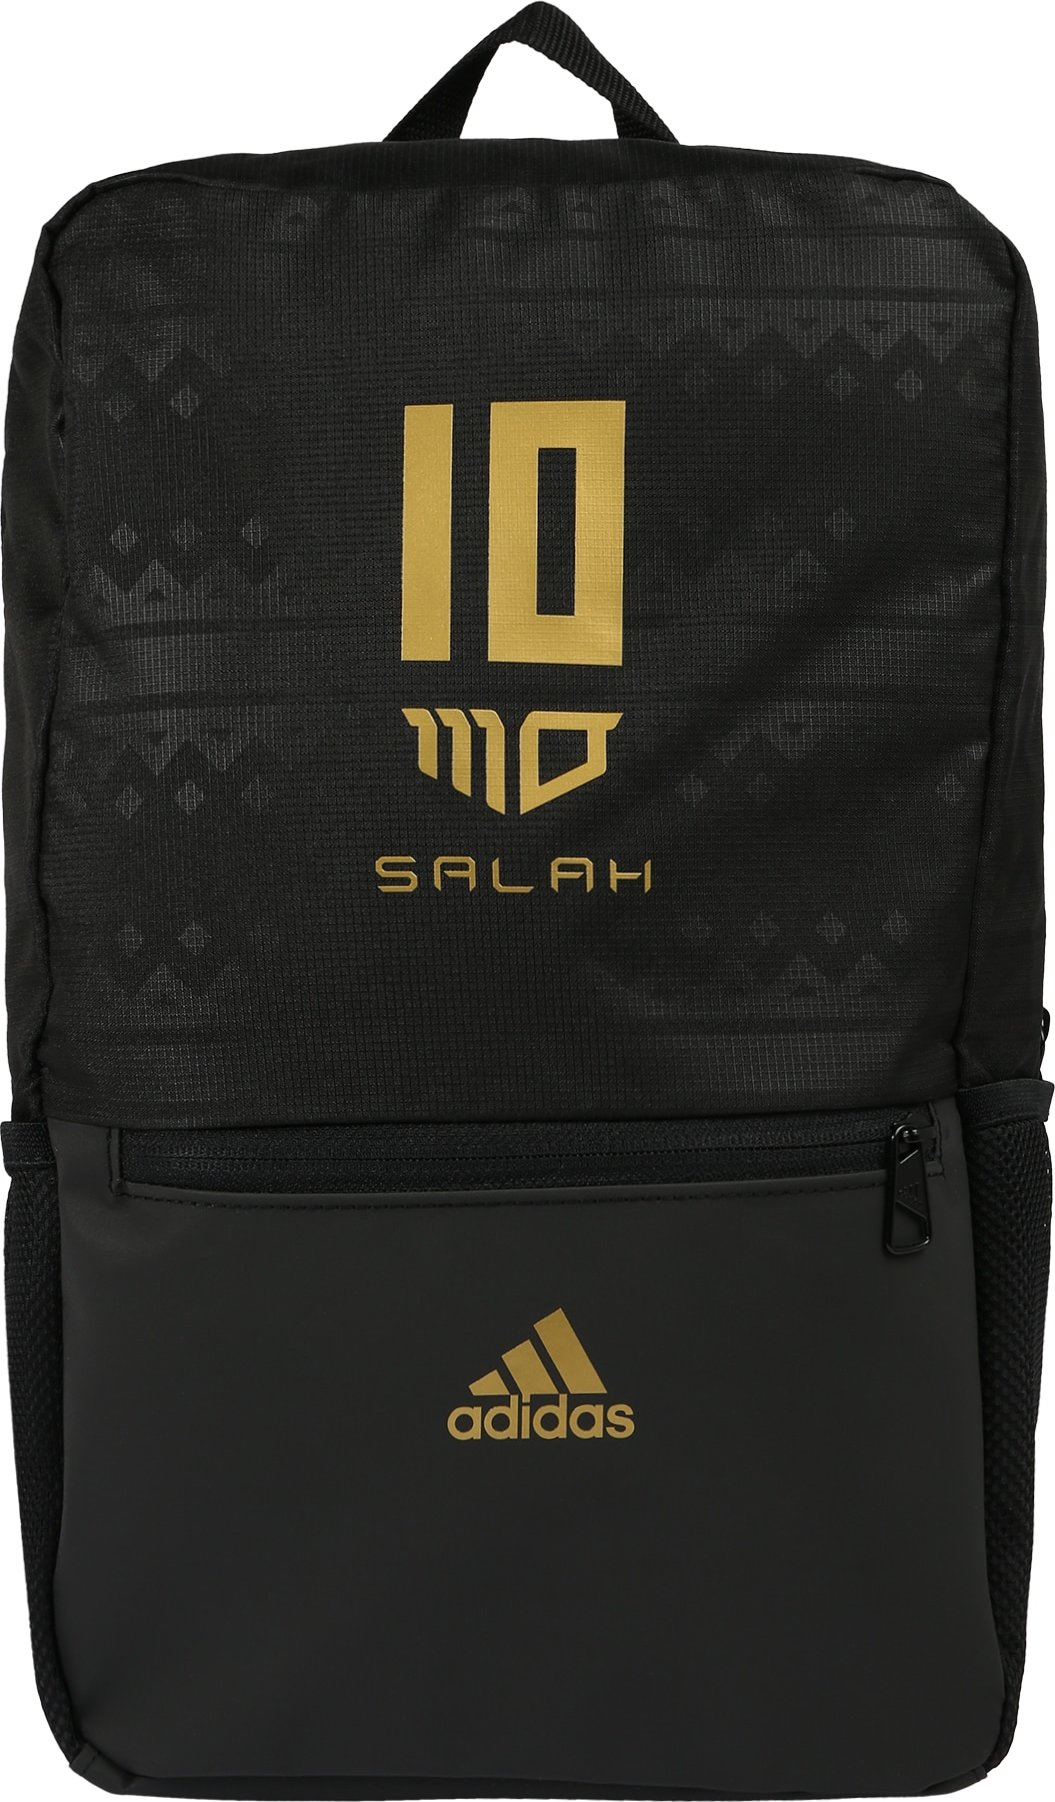 ADIDAS PERFORMANCE Sportovní batoh 'Salah' černá / zlatě žlutá